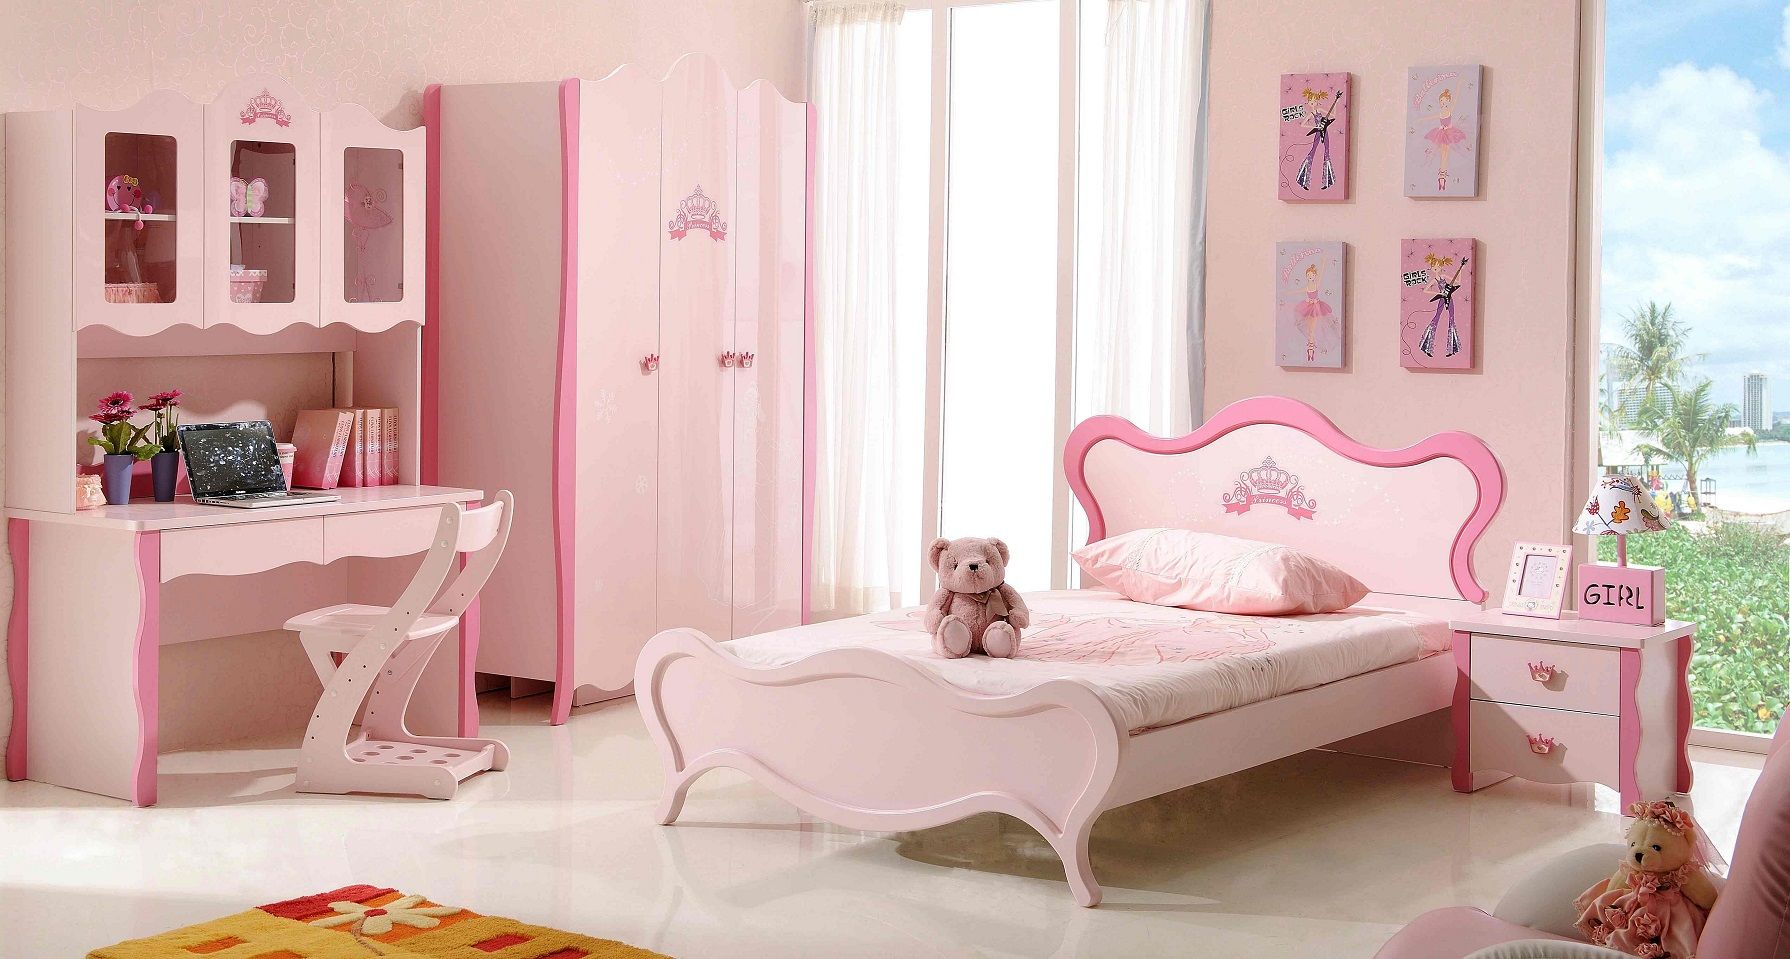 Phòng ngủ bé gái màu tím dễ thương với nhiều vật dụng xinh xắn